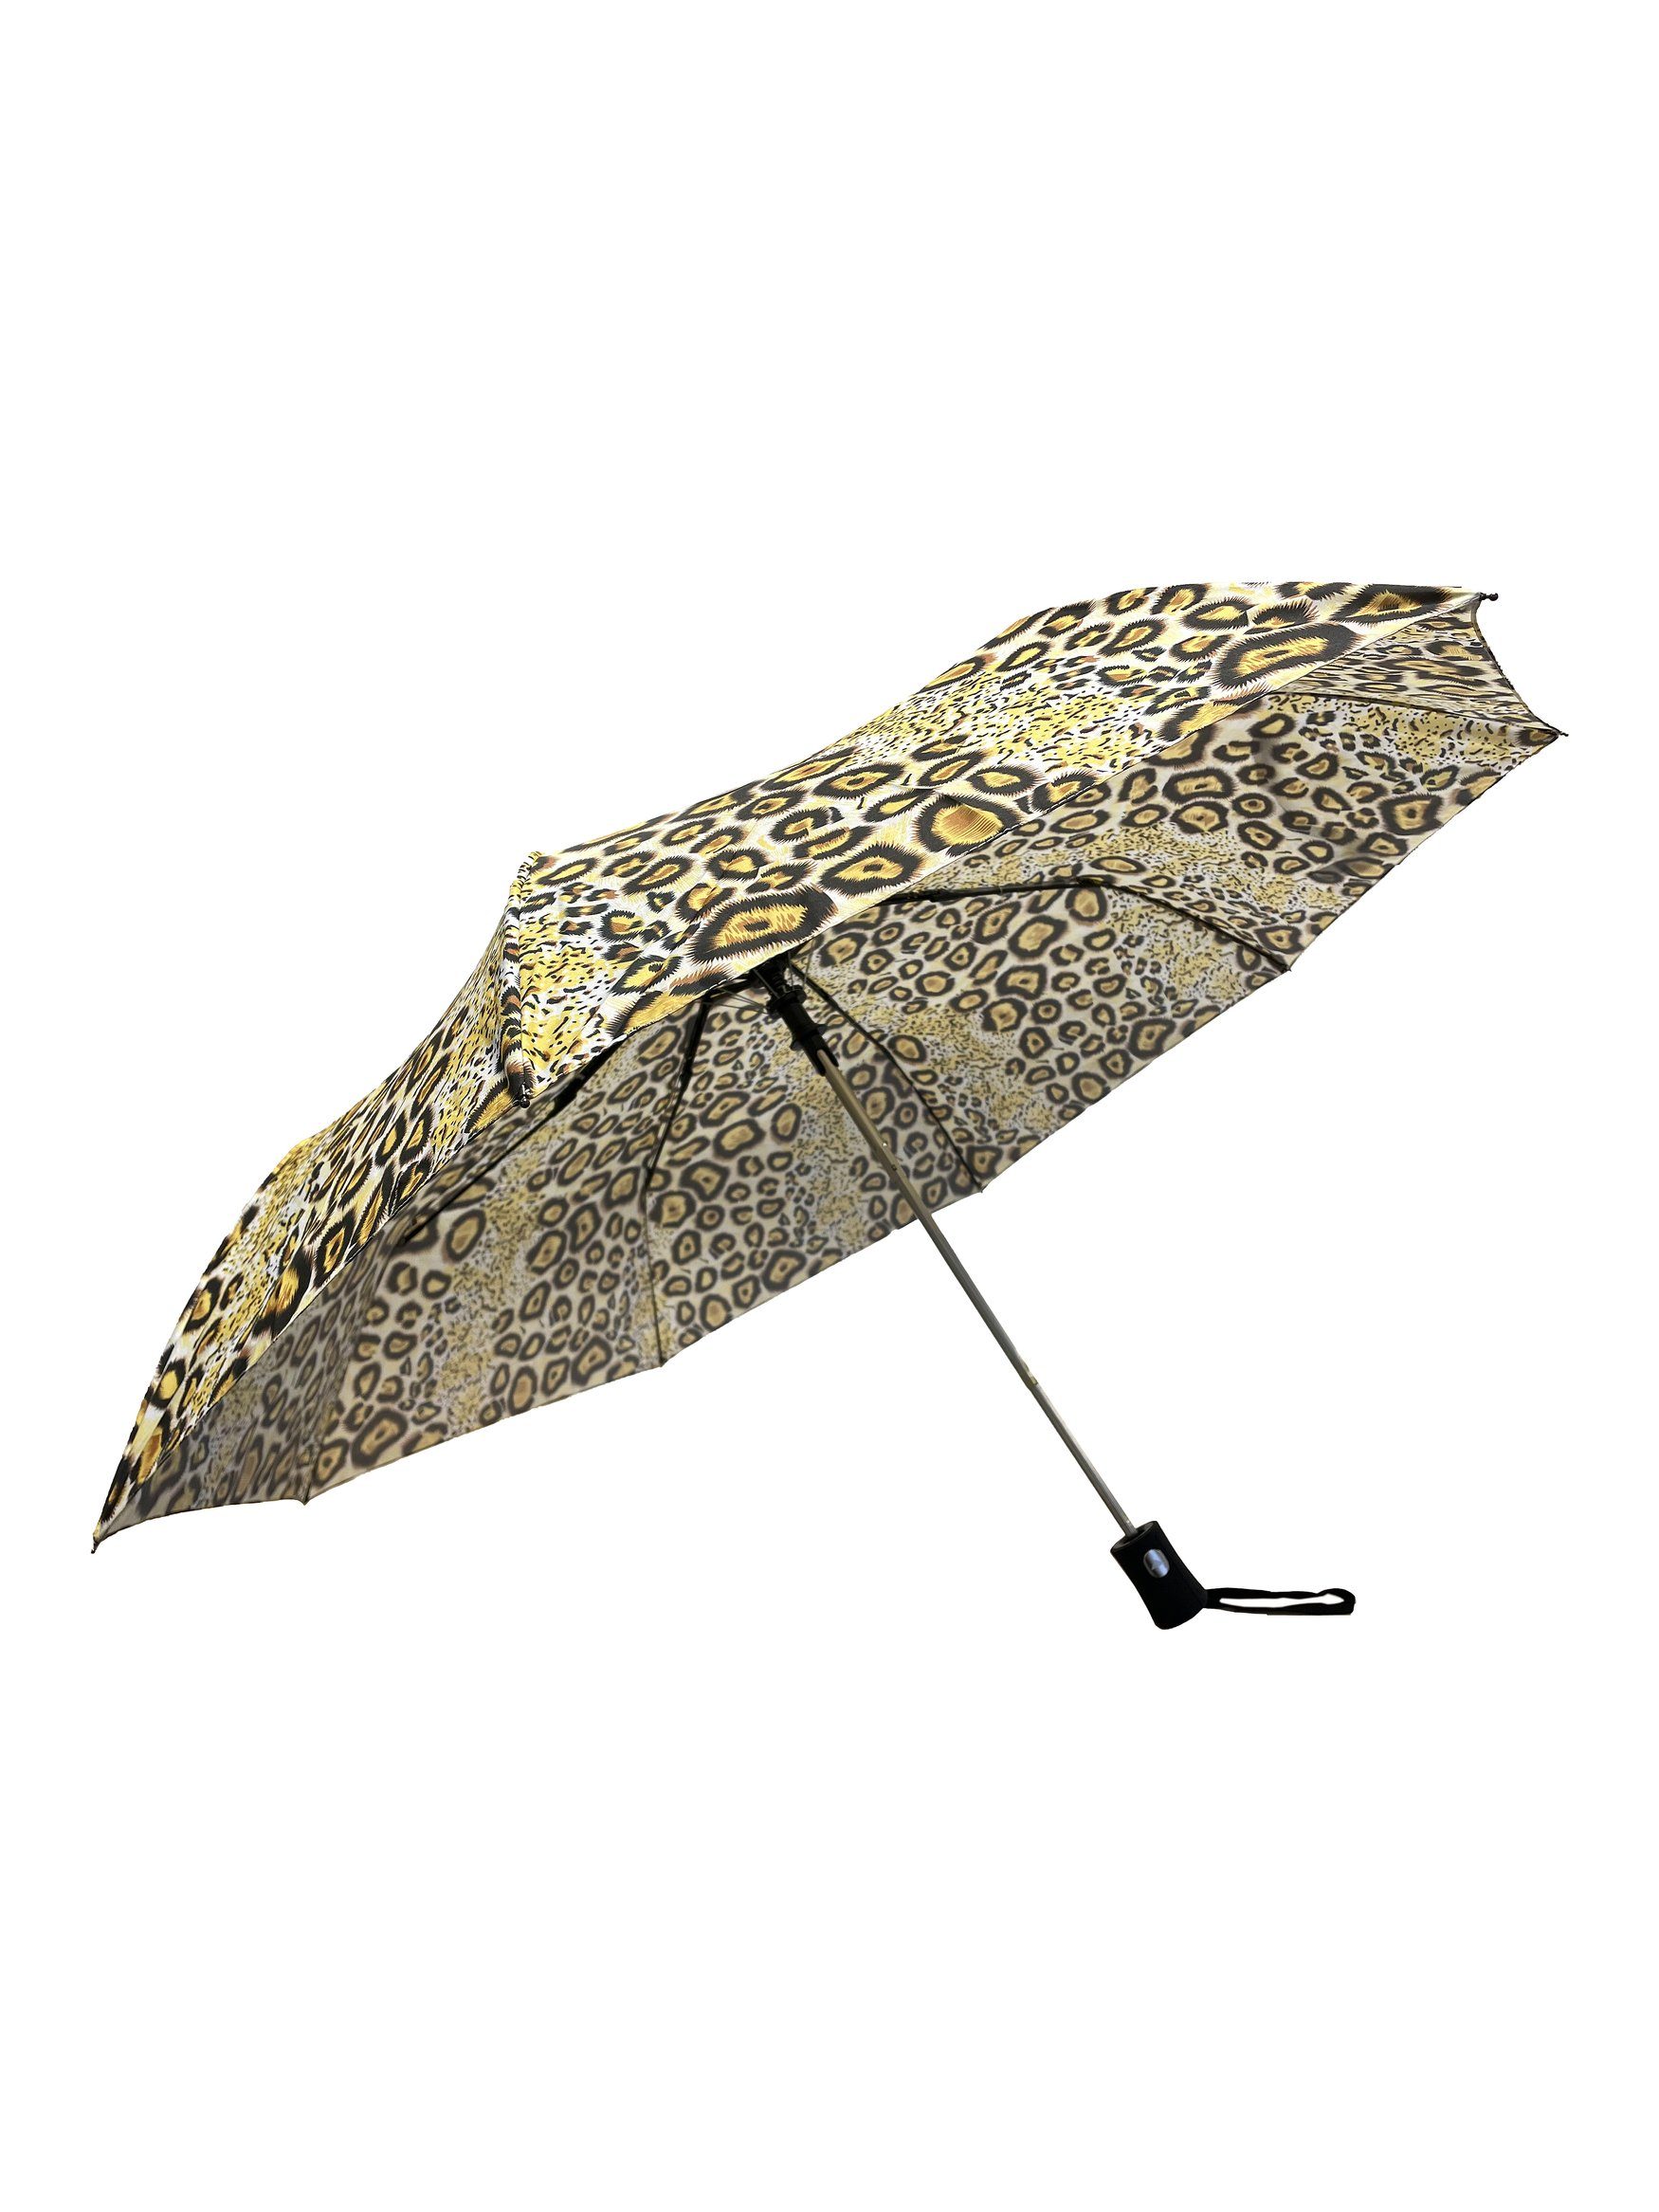 Taschenregenschirm in Automatik Kleiner Taschenschirm, ANELY Gelb Muster Leopard Regenschirm 6747